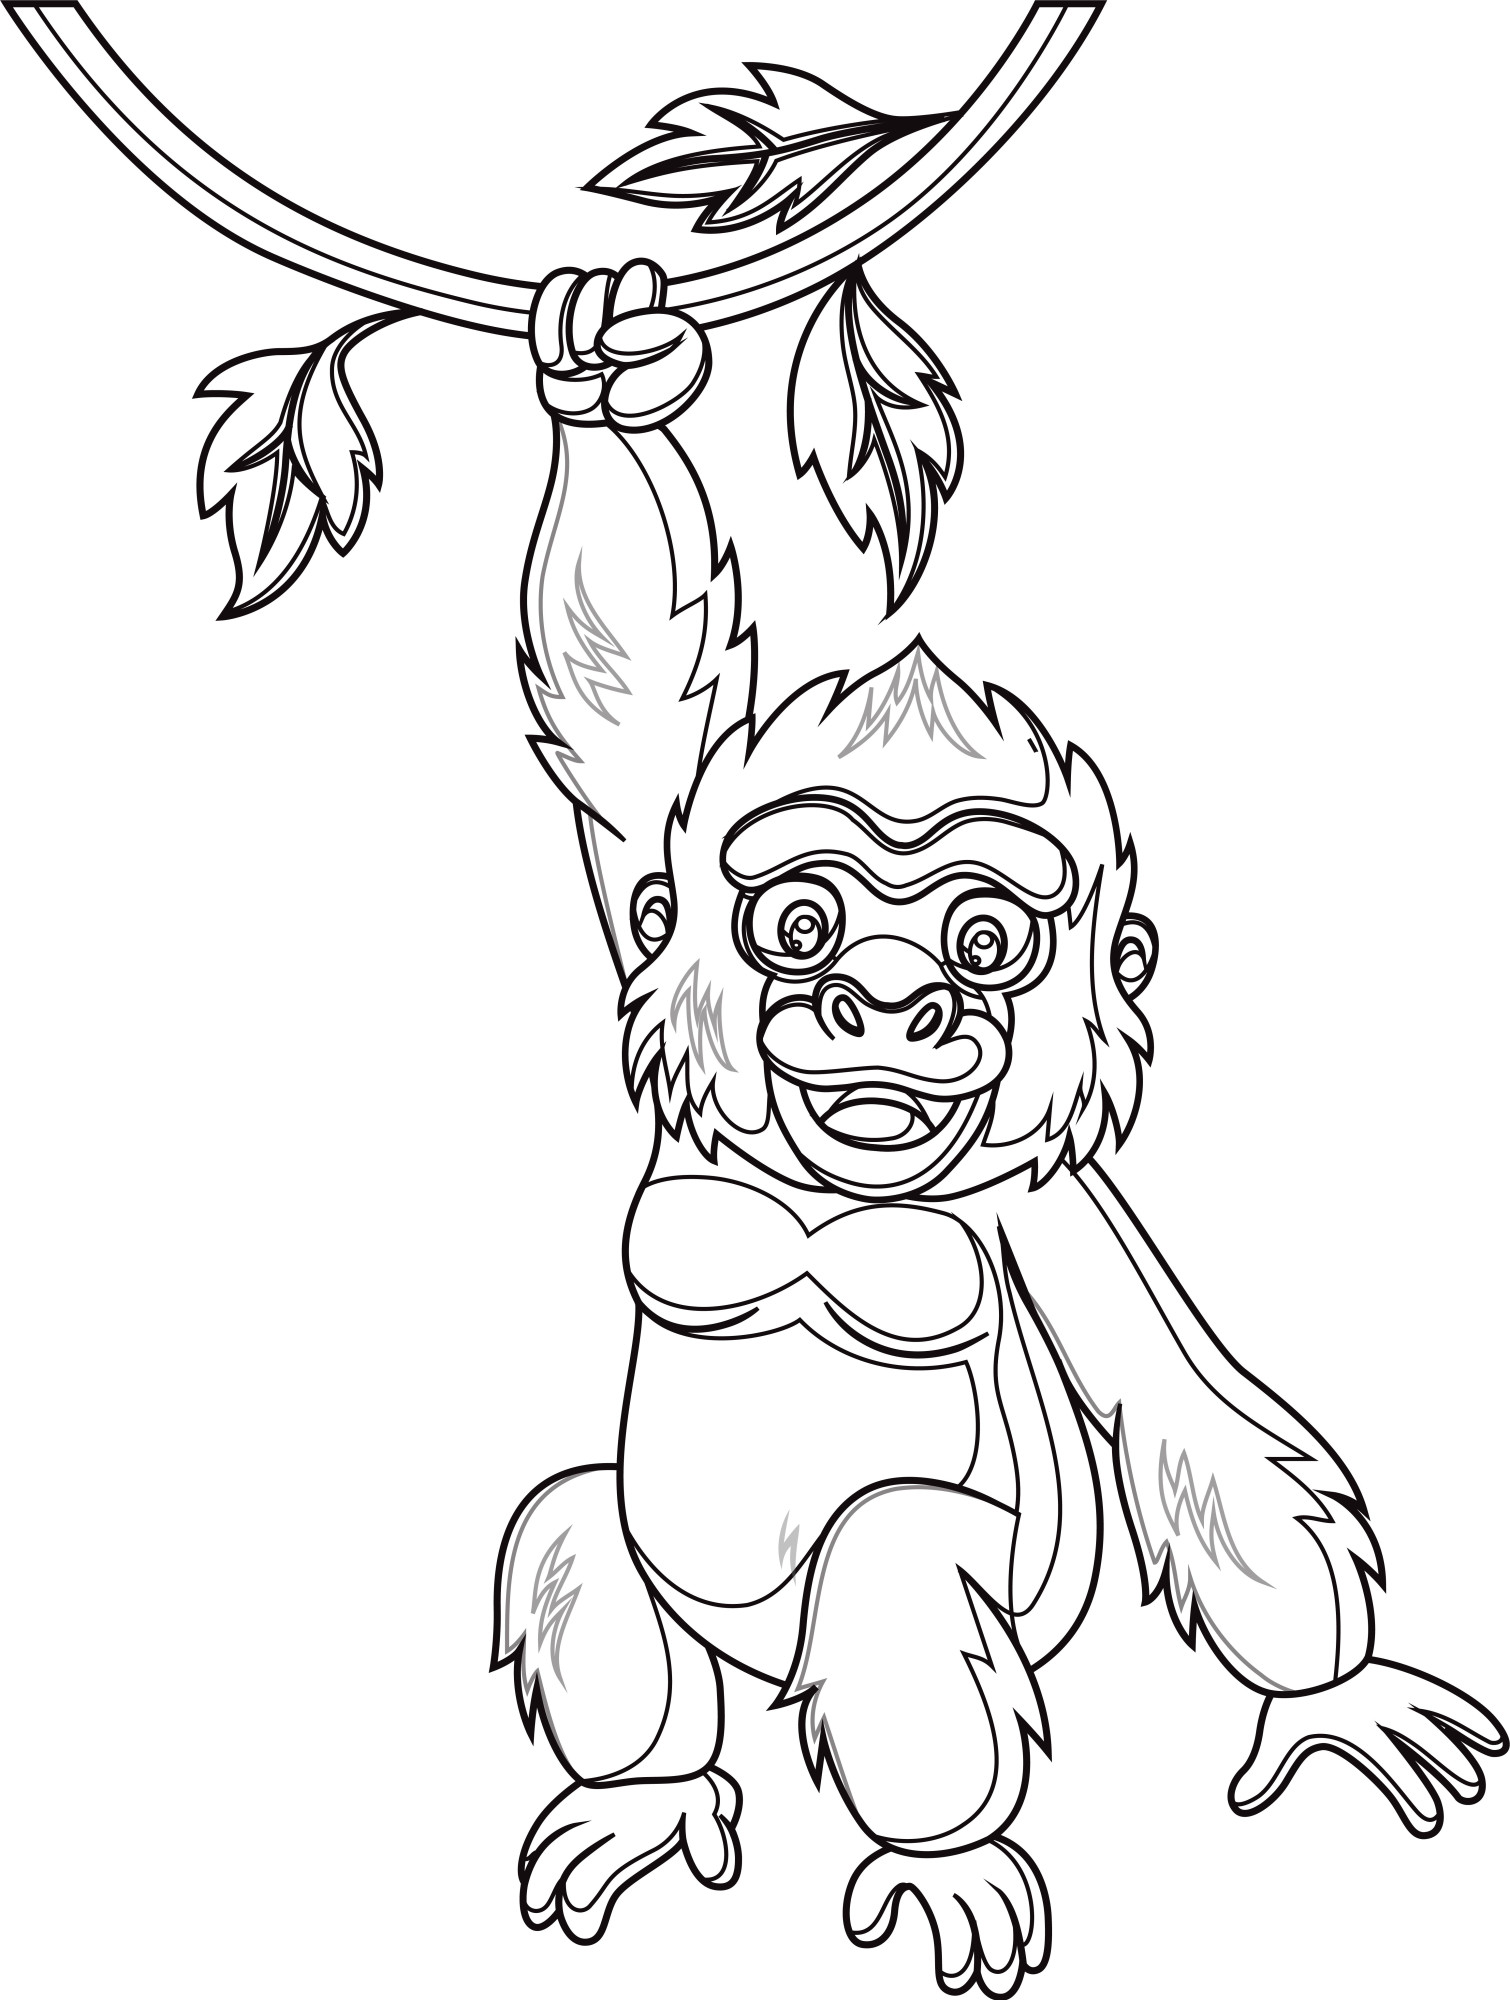 Раскраска для детей: обезьяна горилла висит на ветке дерева